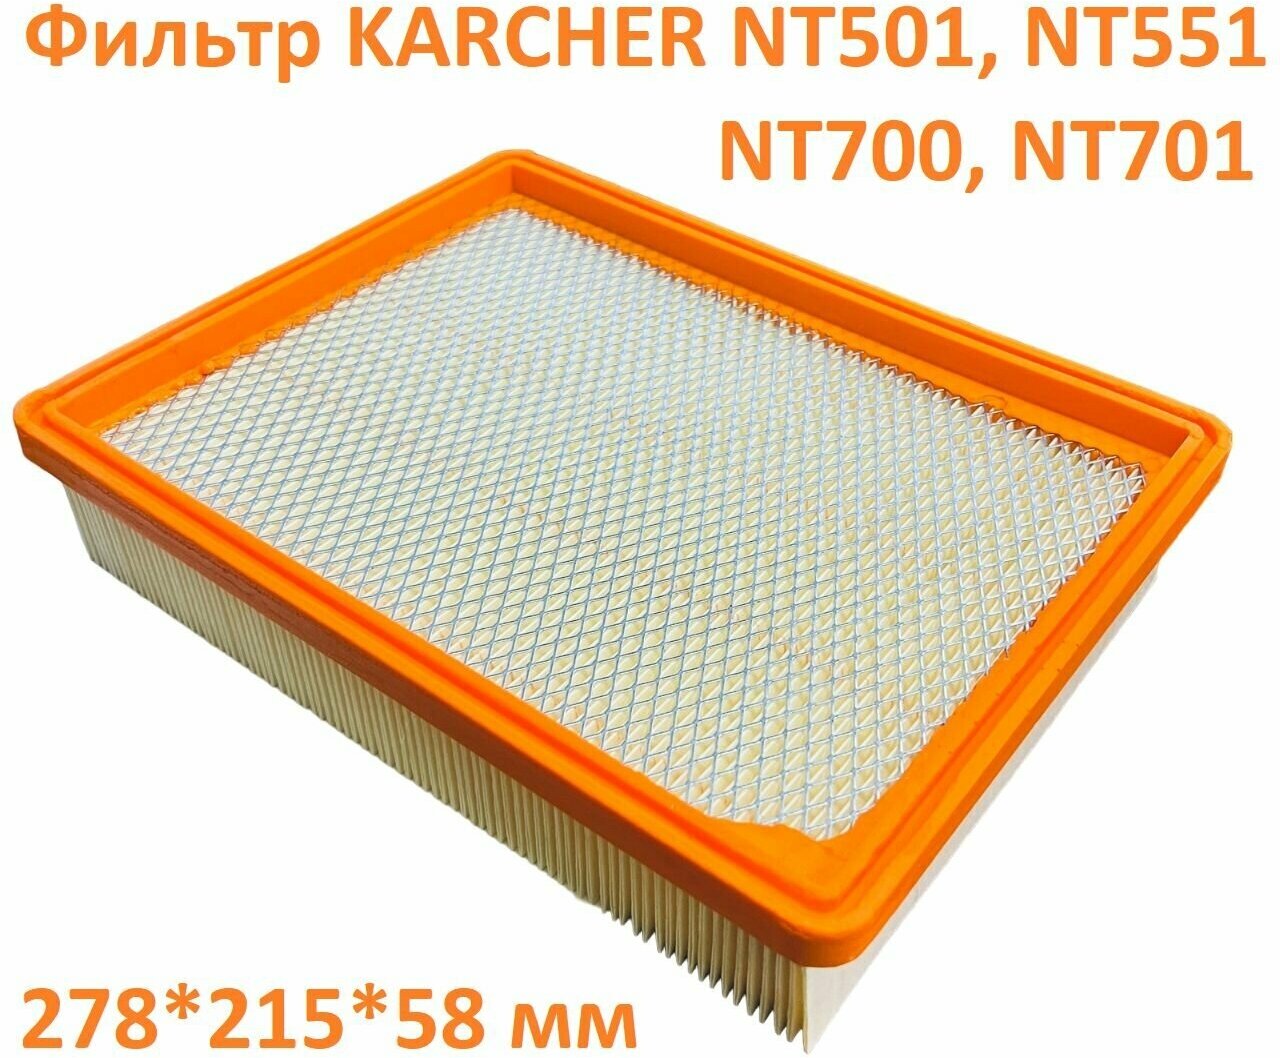 Плоский складчатый фильтр - hepa фильтр пылесоса Karcher NT501 NT551 NT700 - 5.731-020.0